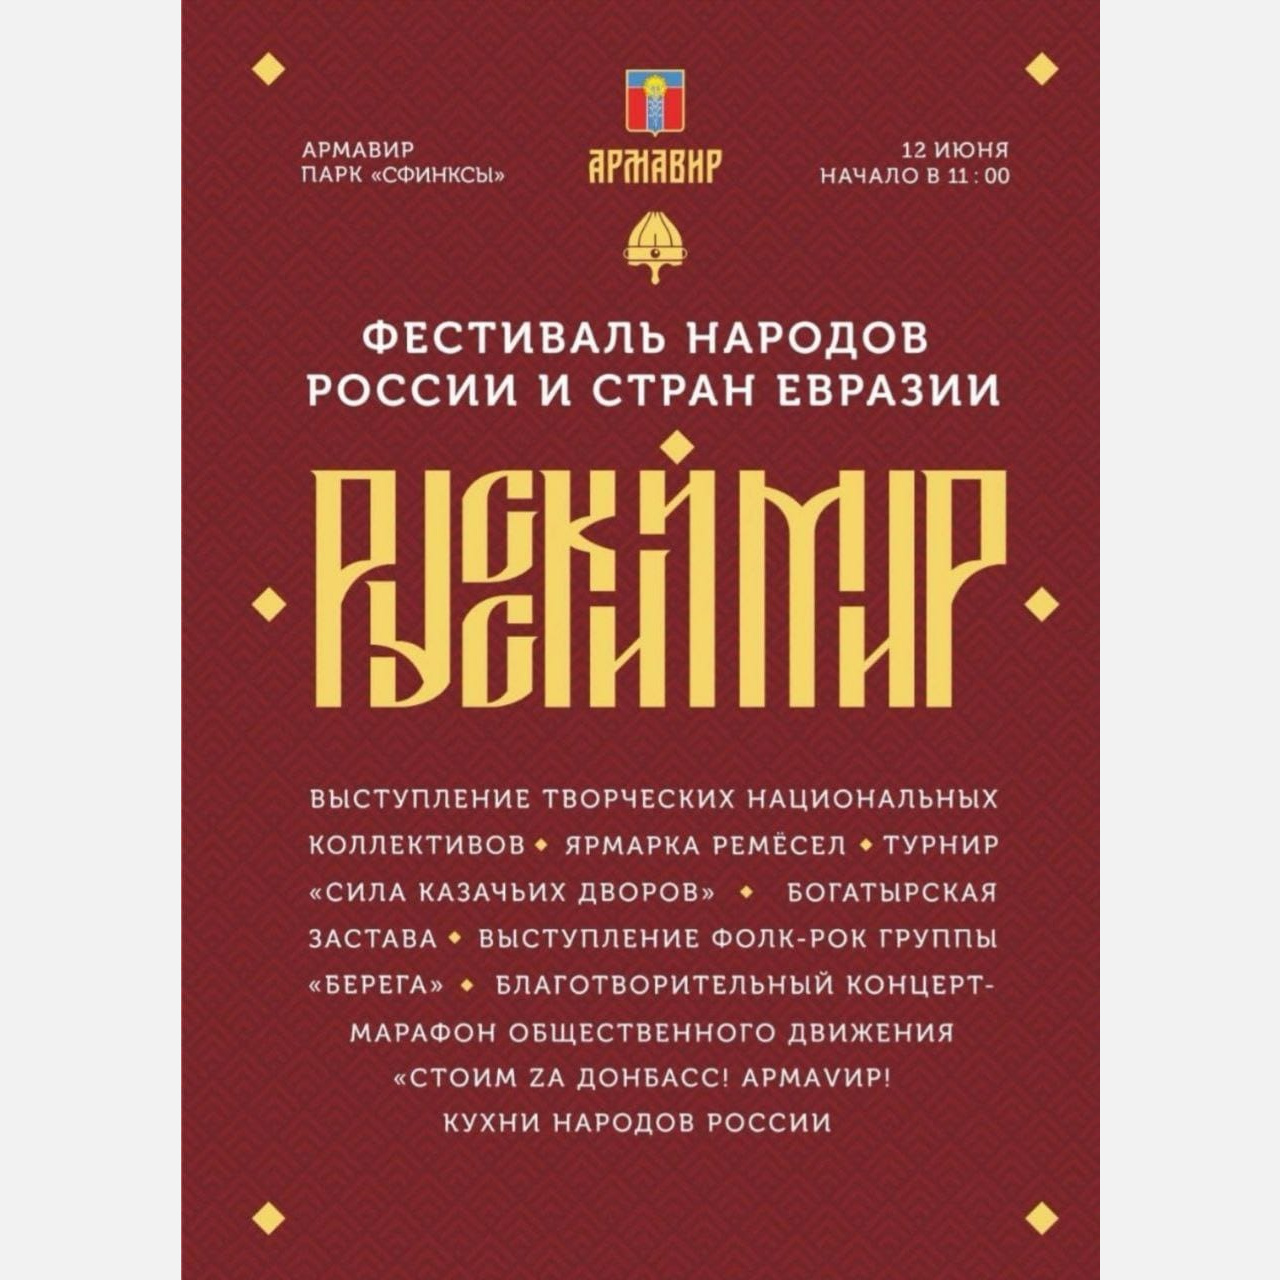 Огненное шоу и тульские богатыри: опубликована подробная программа фестиваля «Русский мир» в Армавире 